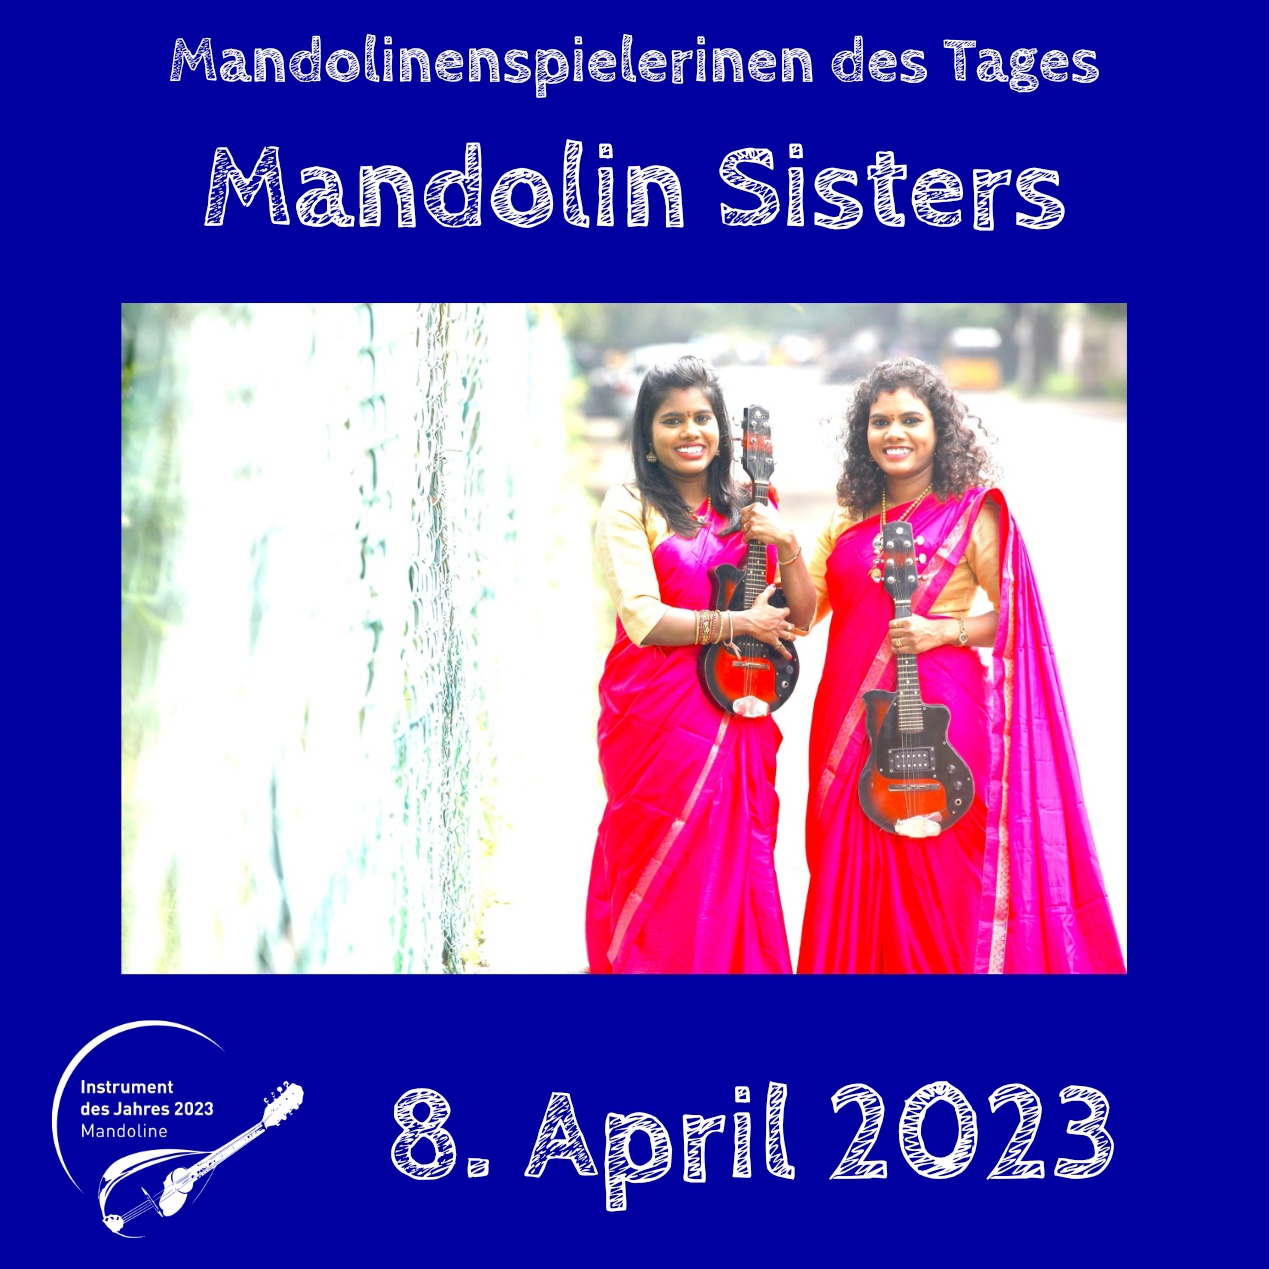 Mandolin Sisters Instrument des Jahres 2023 Mandolinenspieler des Tages